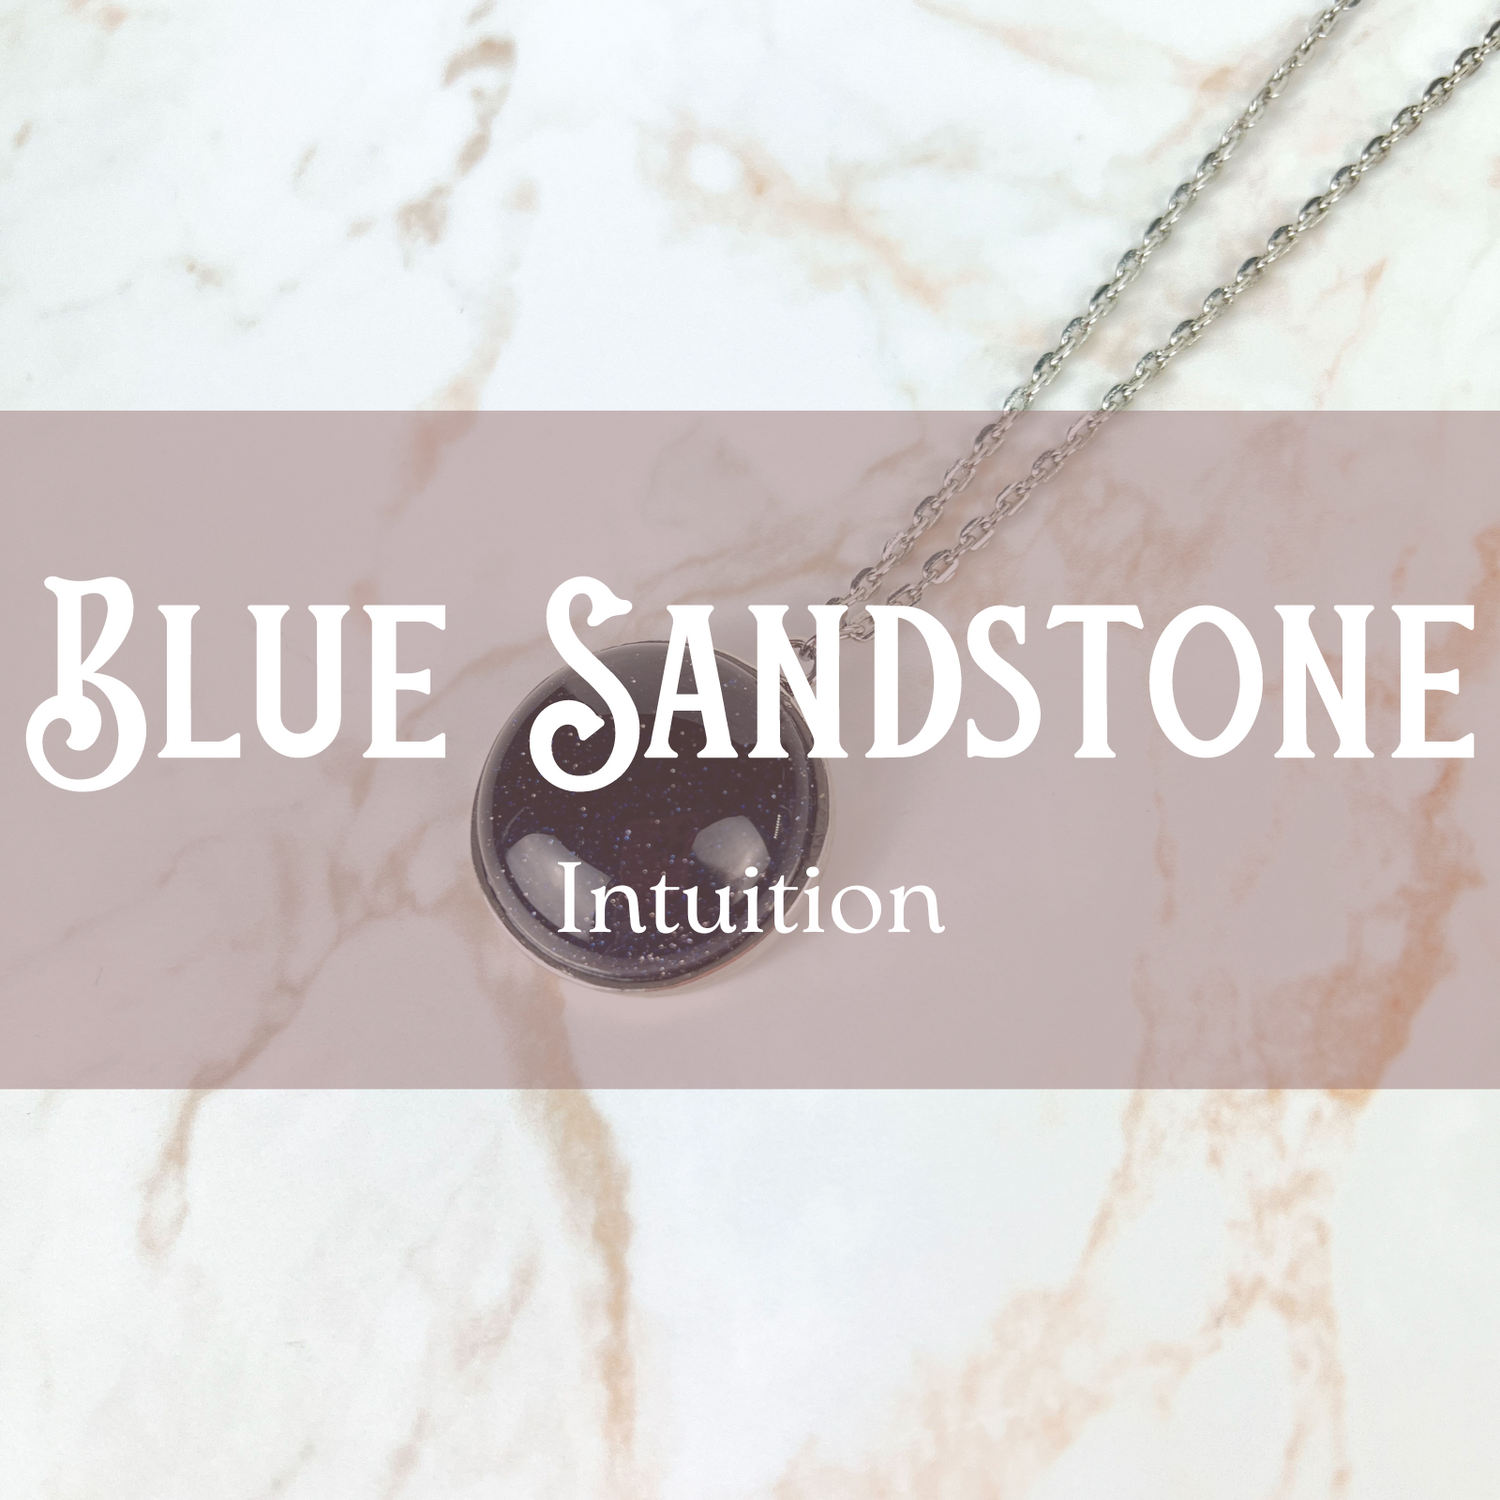 Blue Sandstone